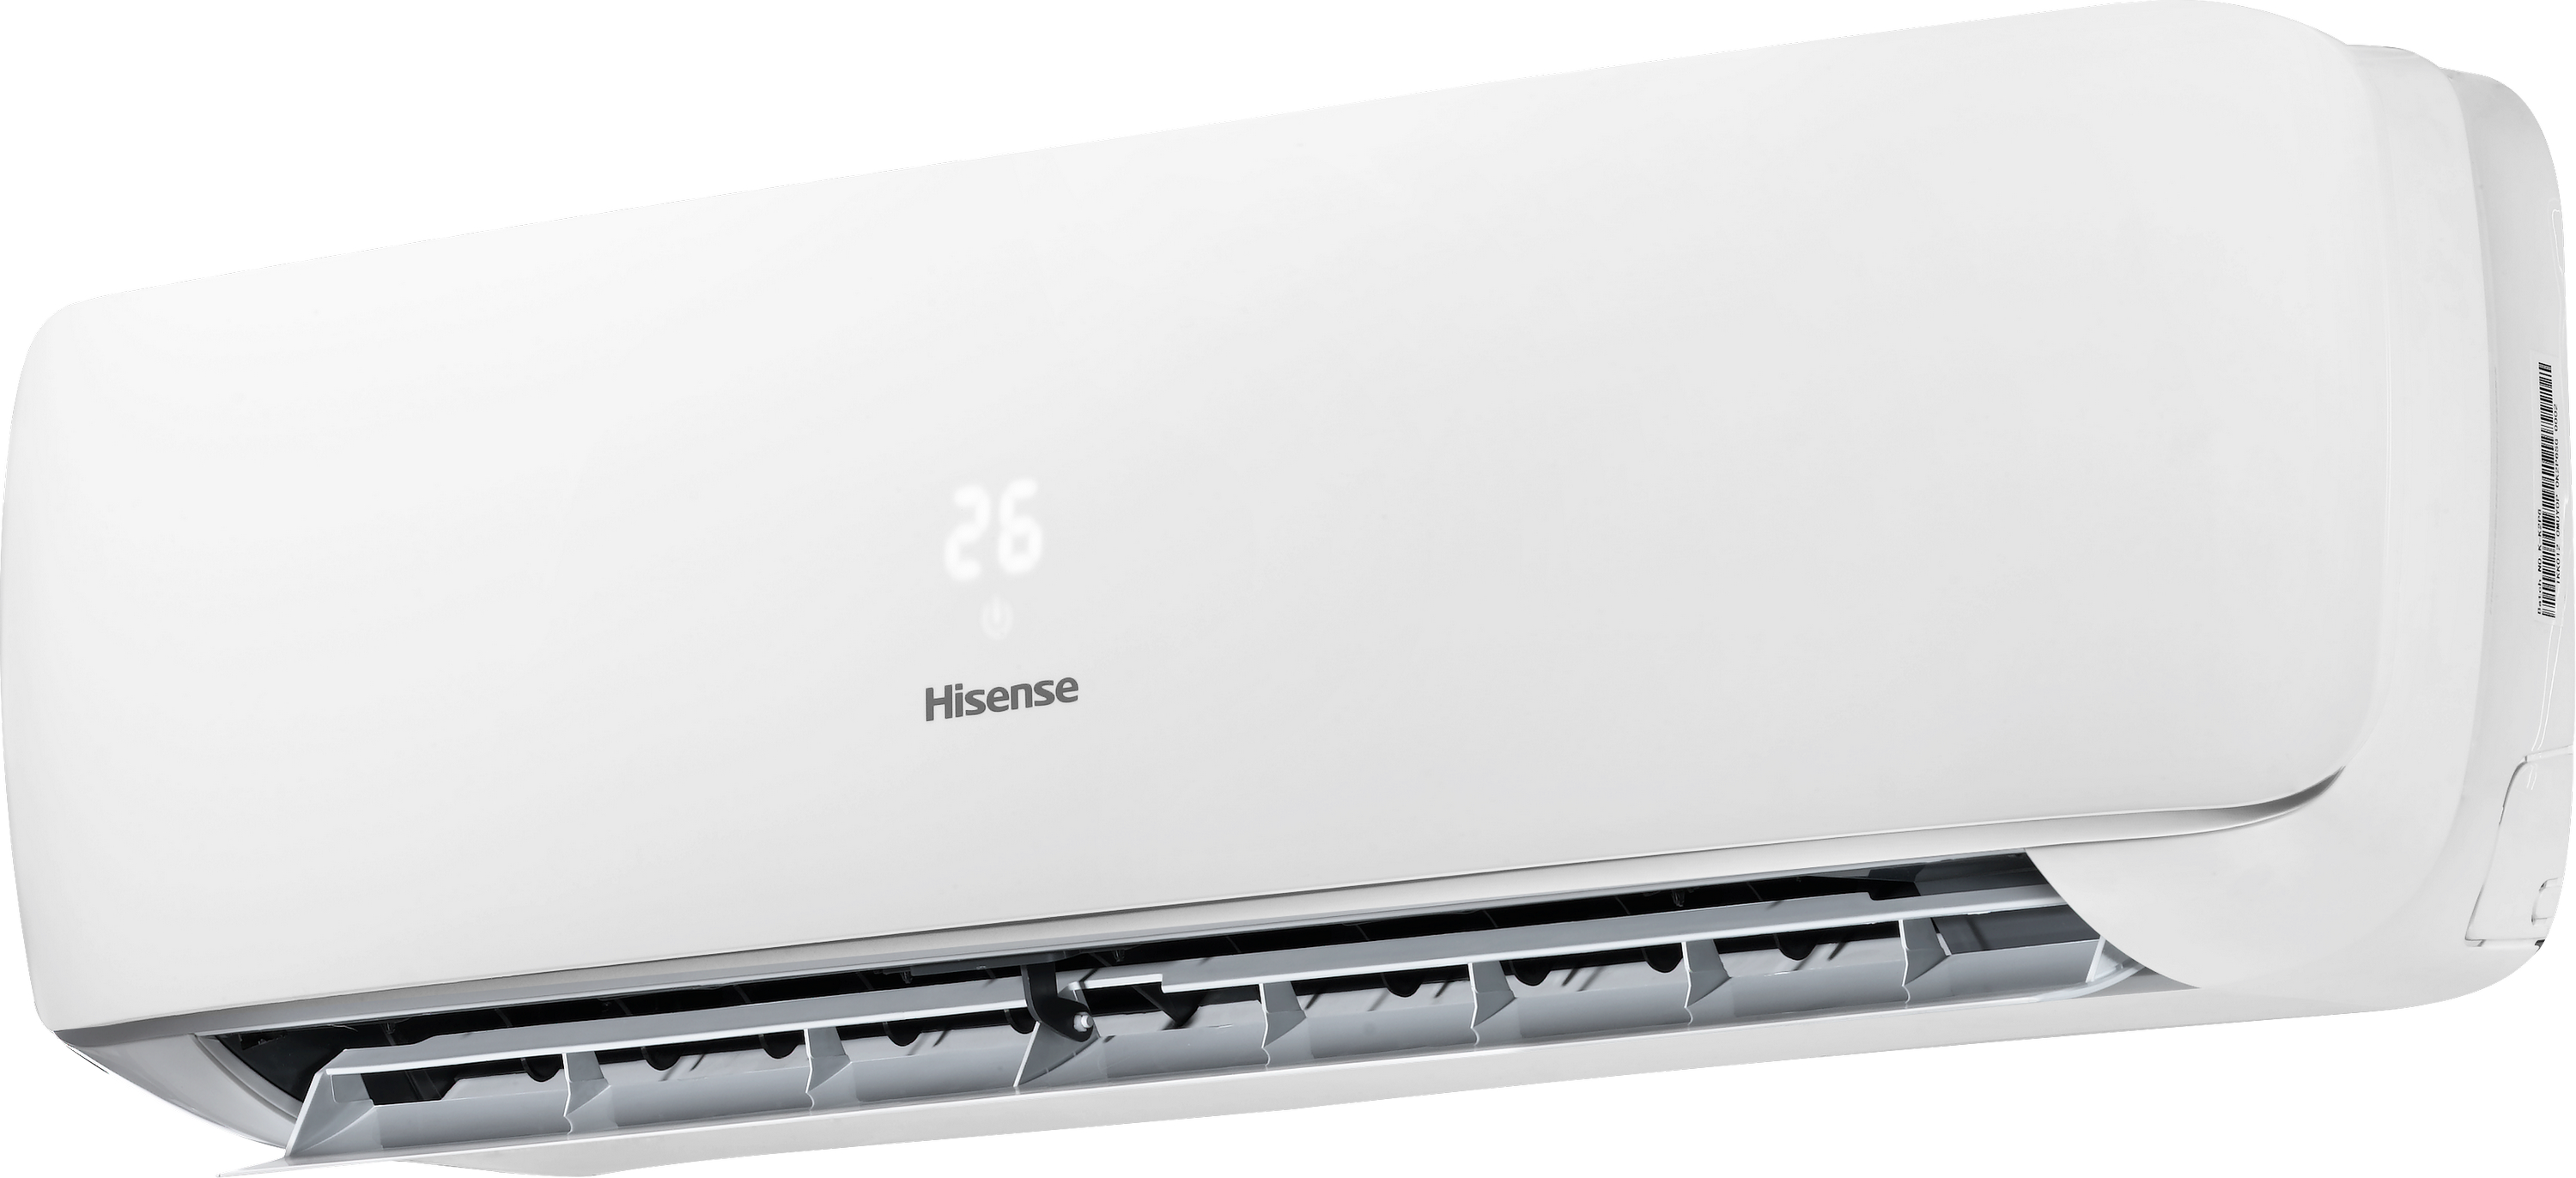 Кондиционер сплит-система Hisense Apple Pie R32 TG25VE0A отзывы - изображения 5